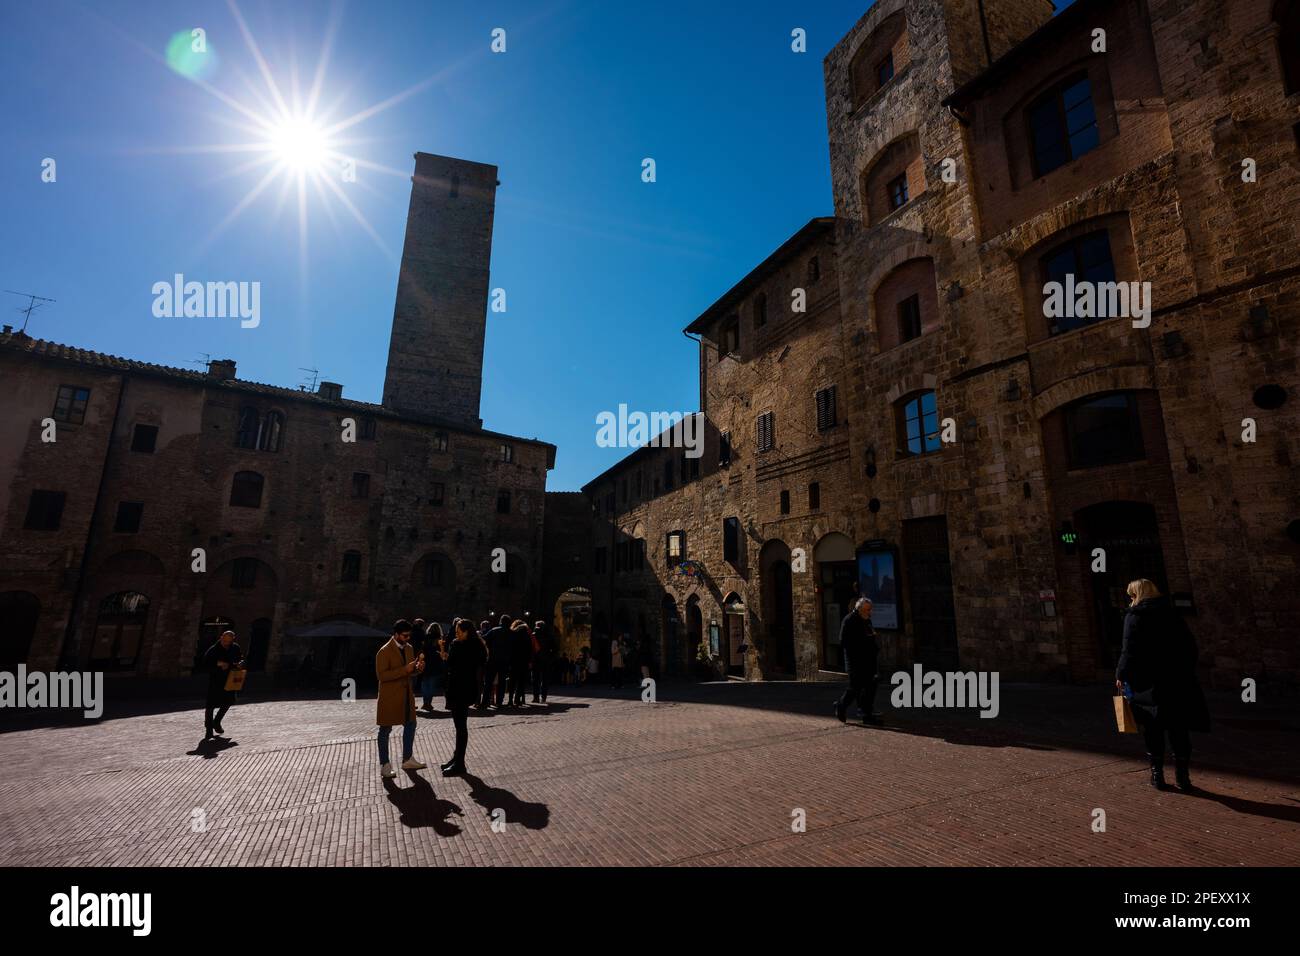 La ville médiévale fortifiée de San Gimignano, une destination populaire pour les touristes en Toscane, Italie. Un site classé au patrimoine mondial de l'UNESCO. Banque D'Images